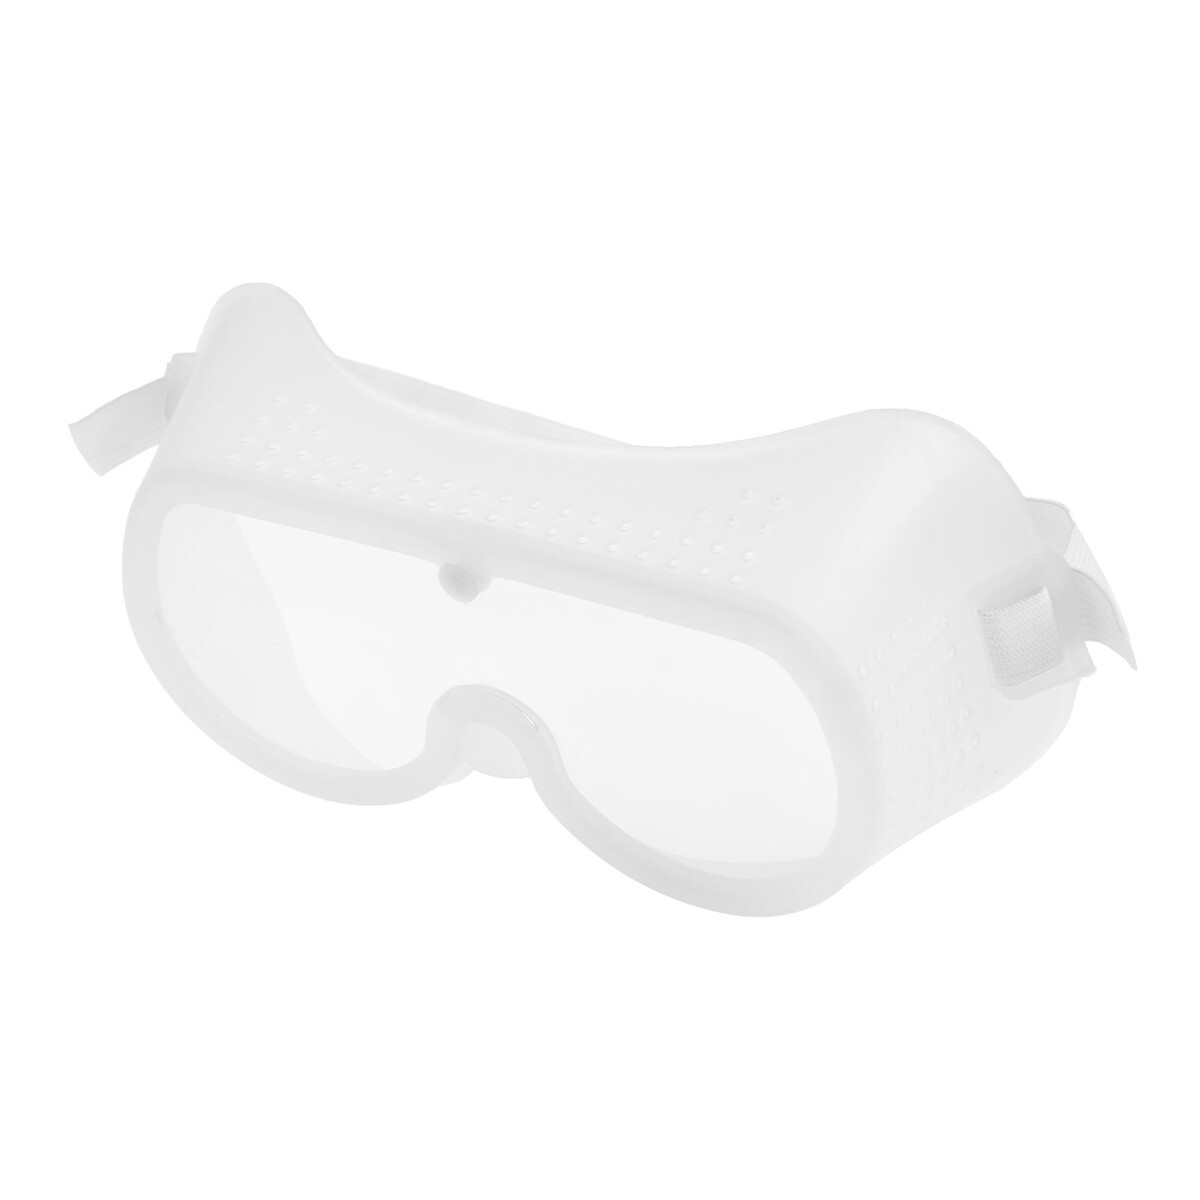 Очки защитные тундра, с поликарбонатными линзами, прозрачные, на резинке очки защитные открытые о35 визион super 5 pc поликарбонат